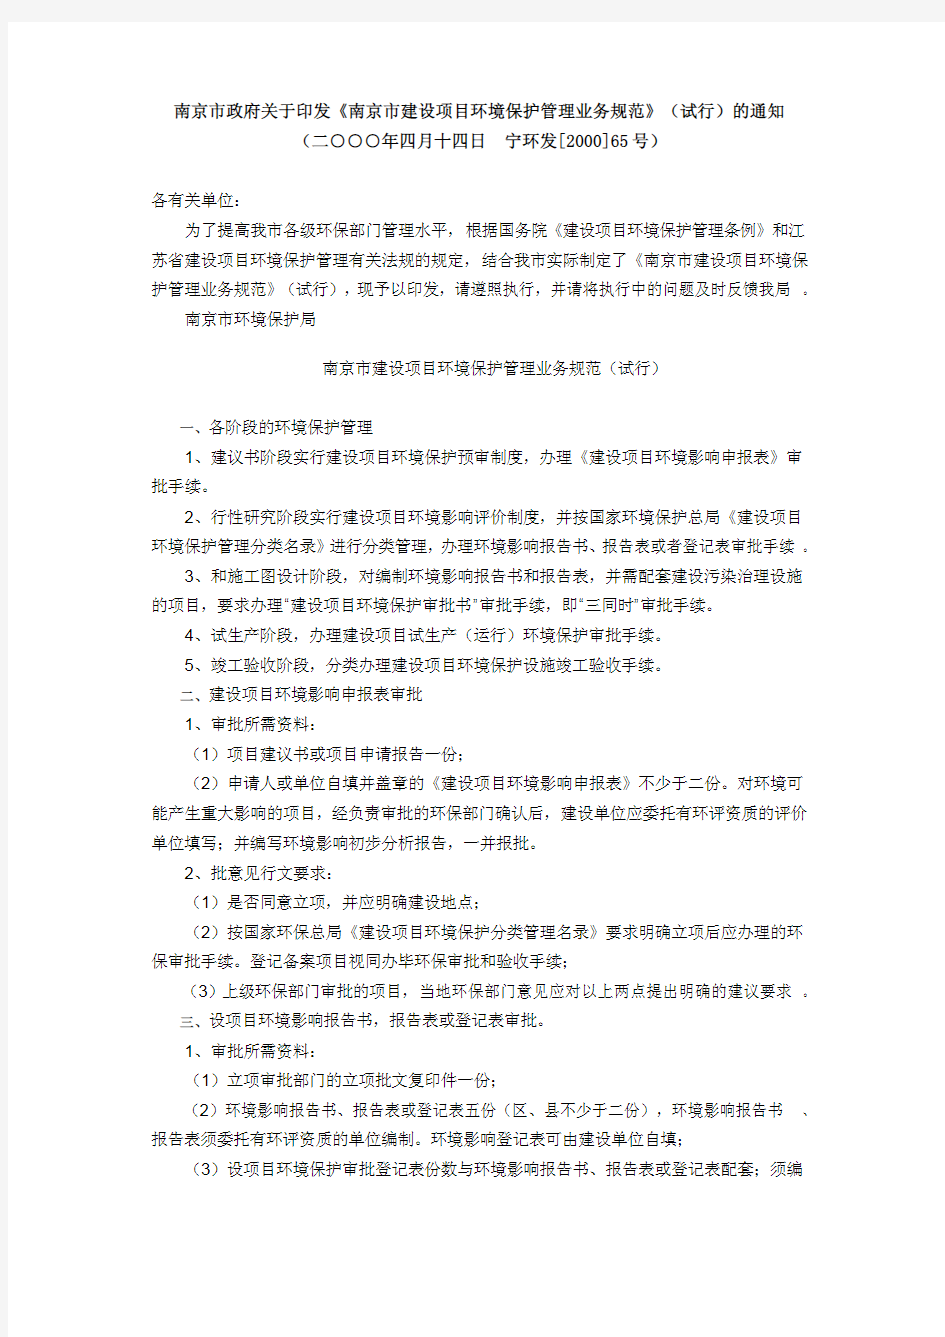 关于印发《南京市建设项目环境保护管理业务规范》(试行)的通知